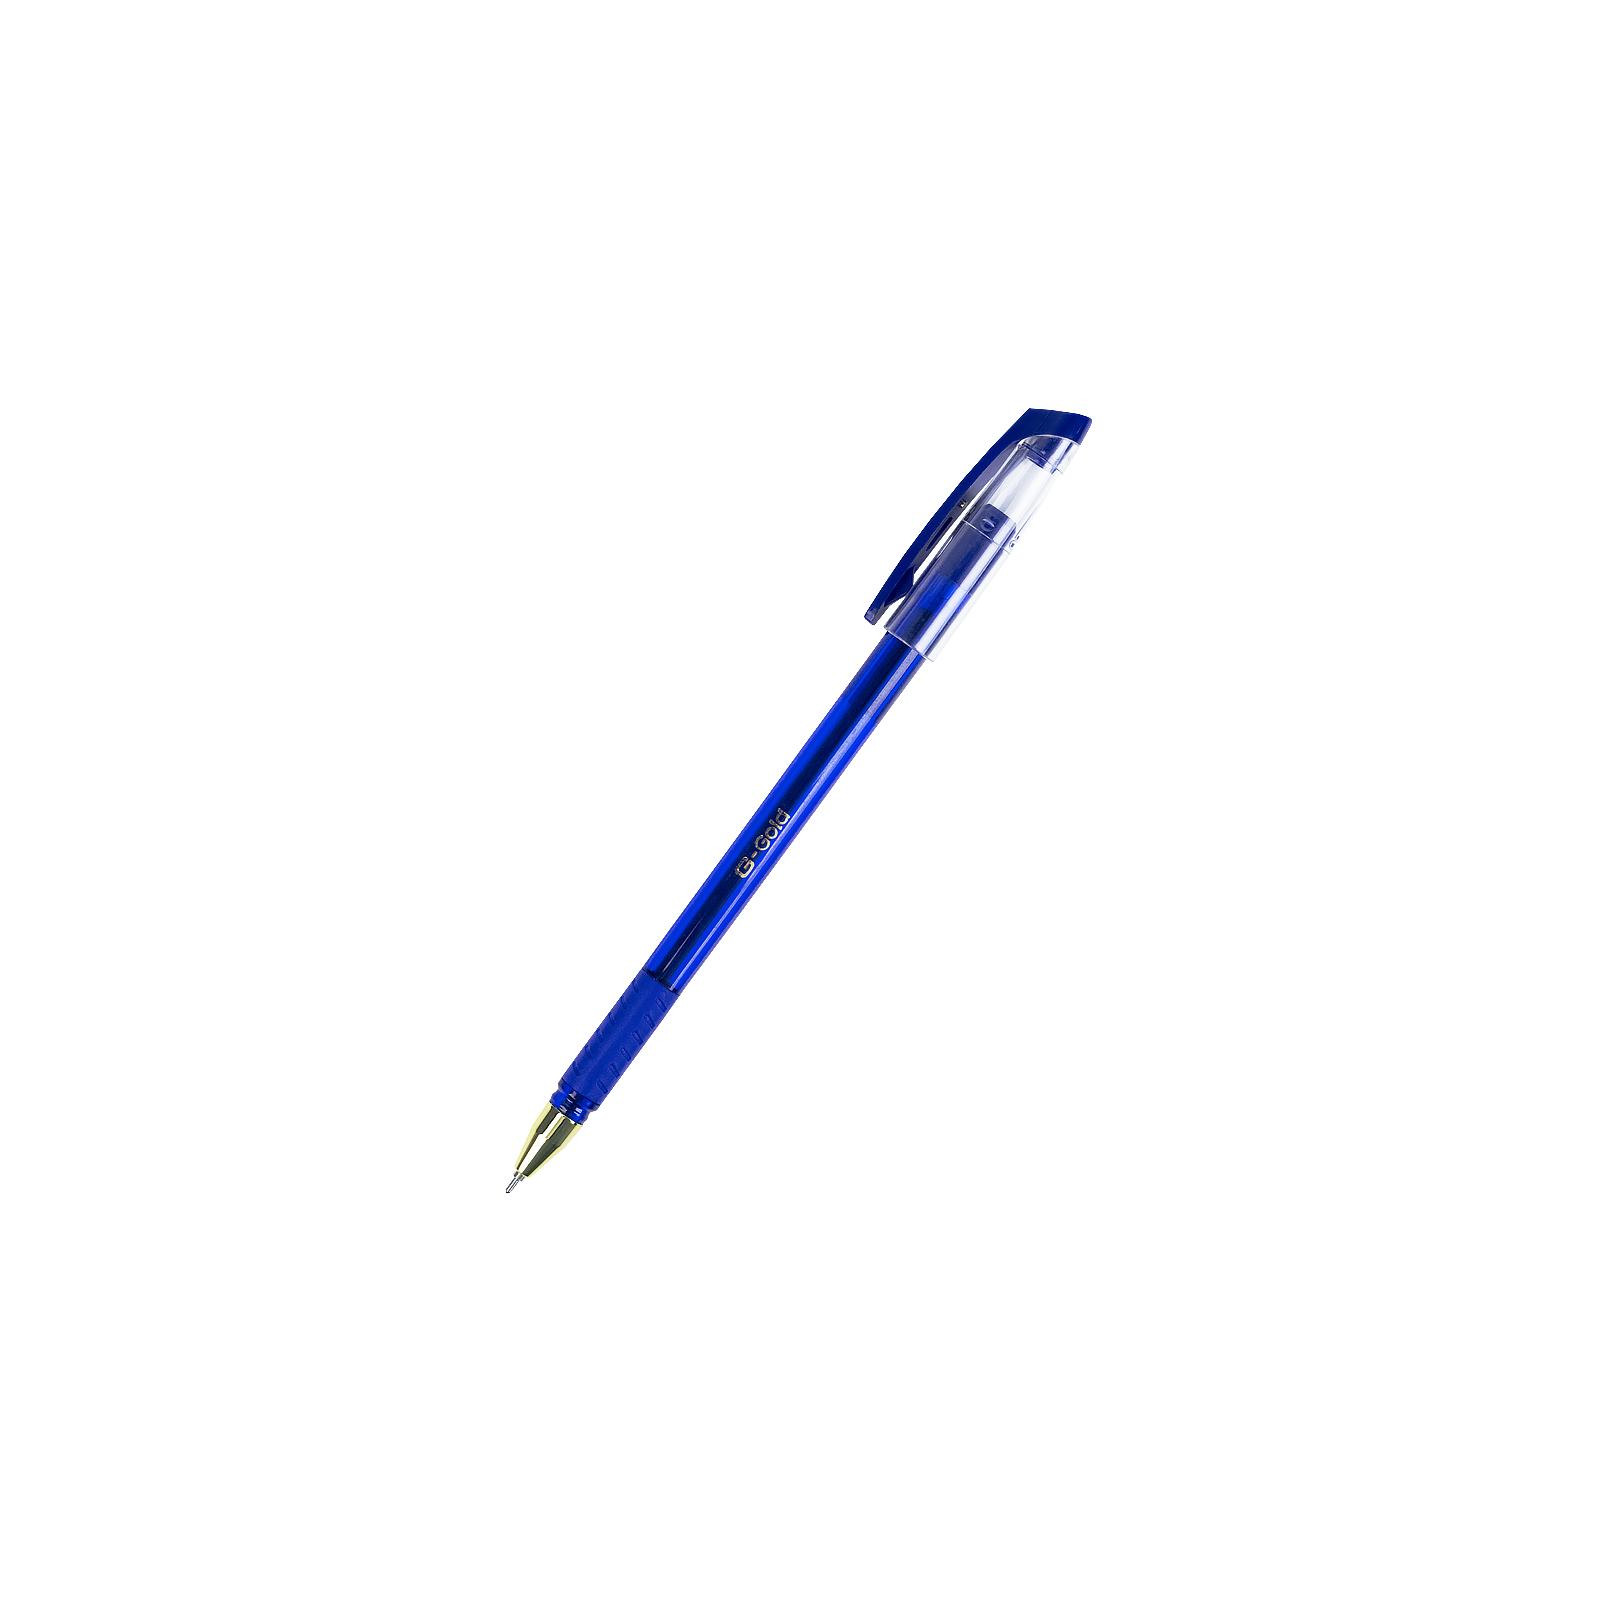 Ручка шариковая Unimax G-Gold, синяя (UX-139-02)